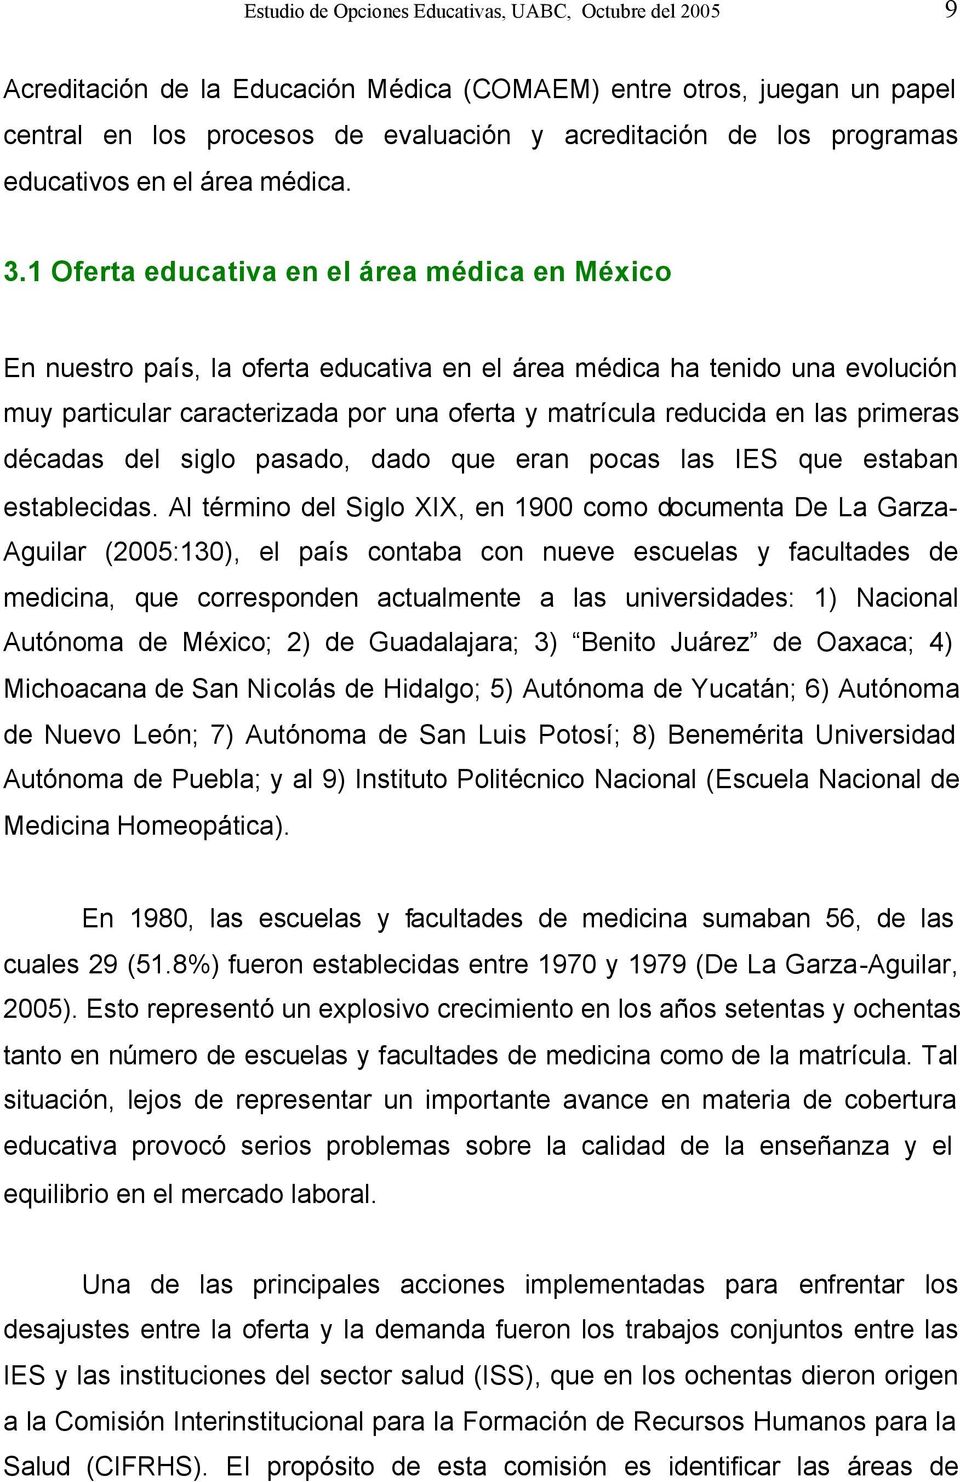 1 Oferta educativa en el área médica en México En nuestro país, la oferta educativa en el área médica ha tenido una evolución muy particular caracterizada por una oferta y matrícula reducida en las